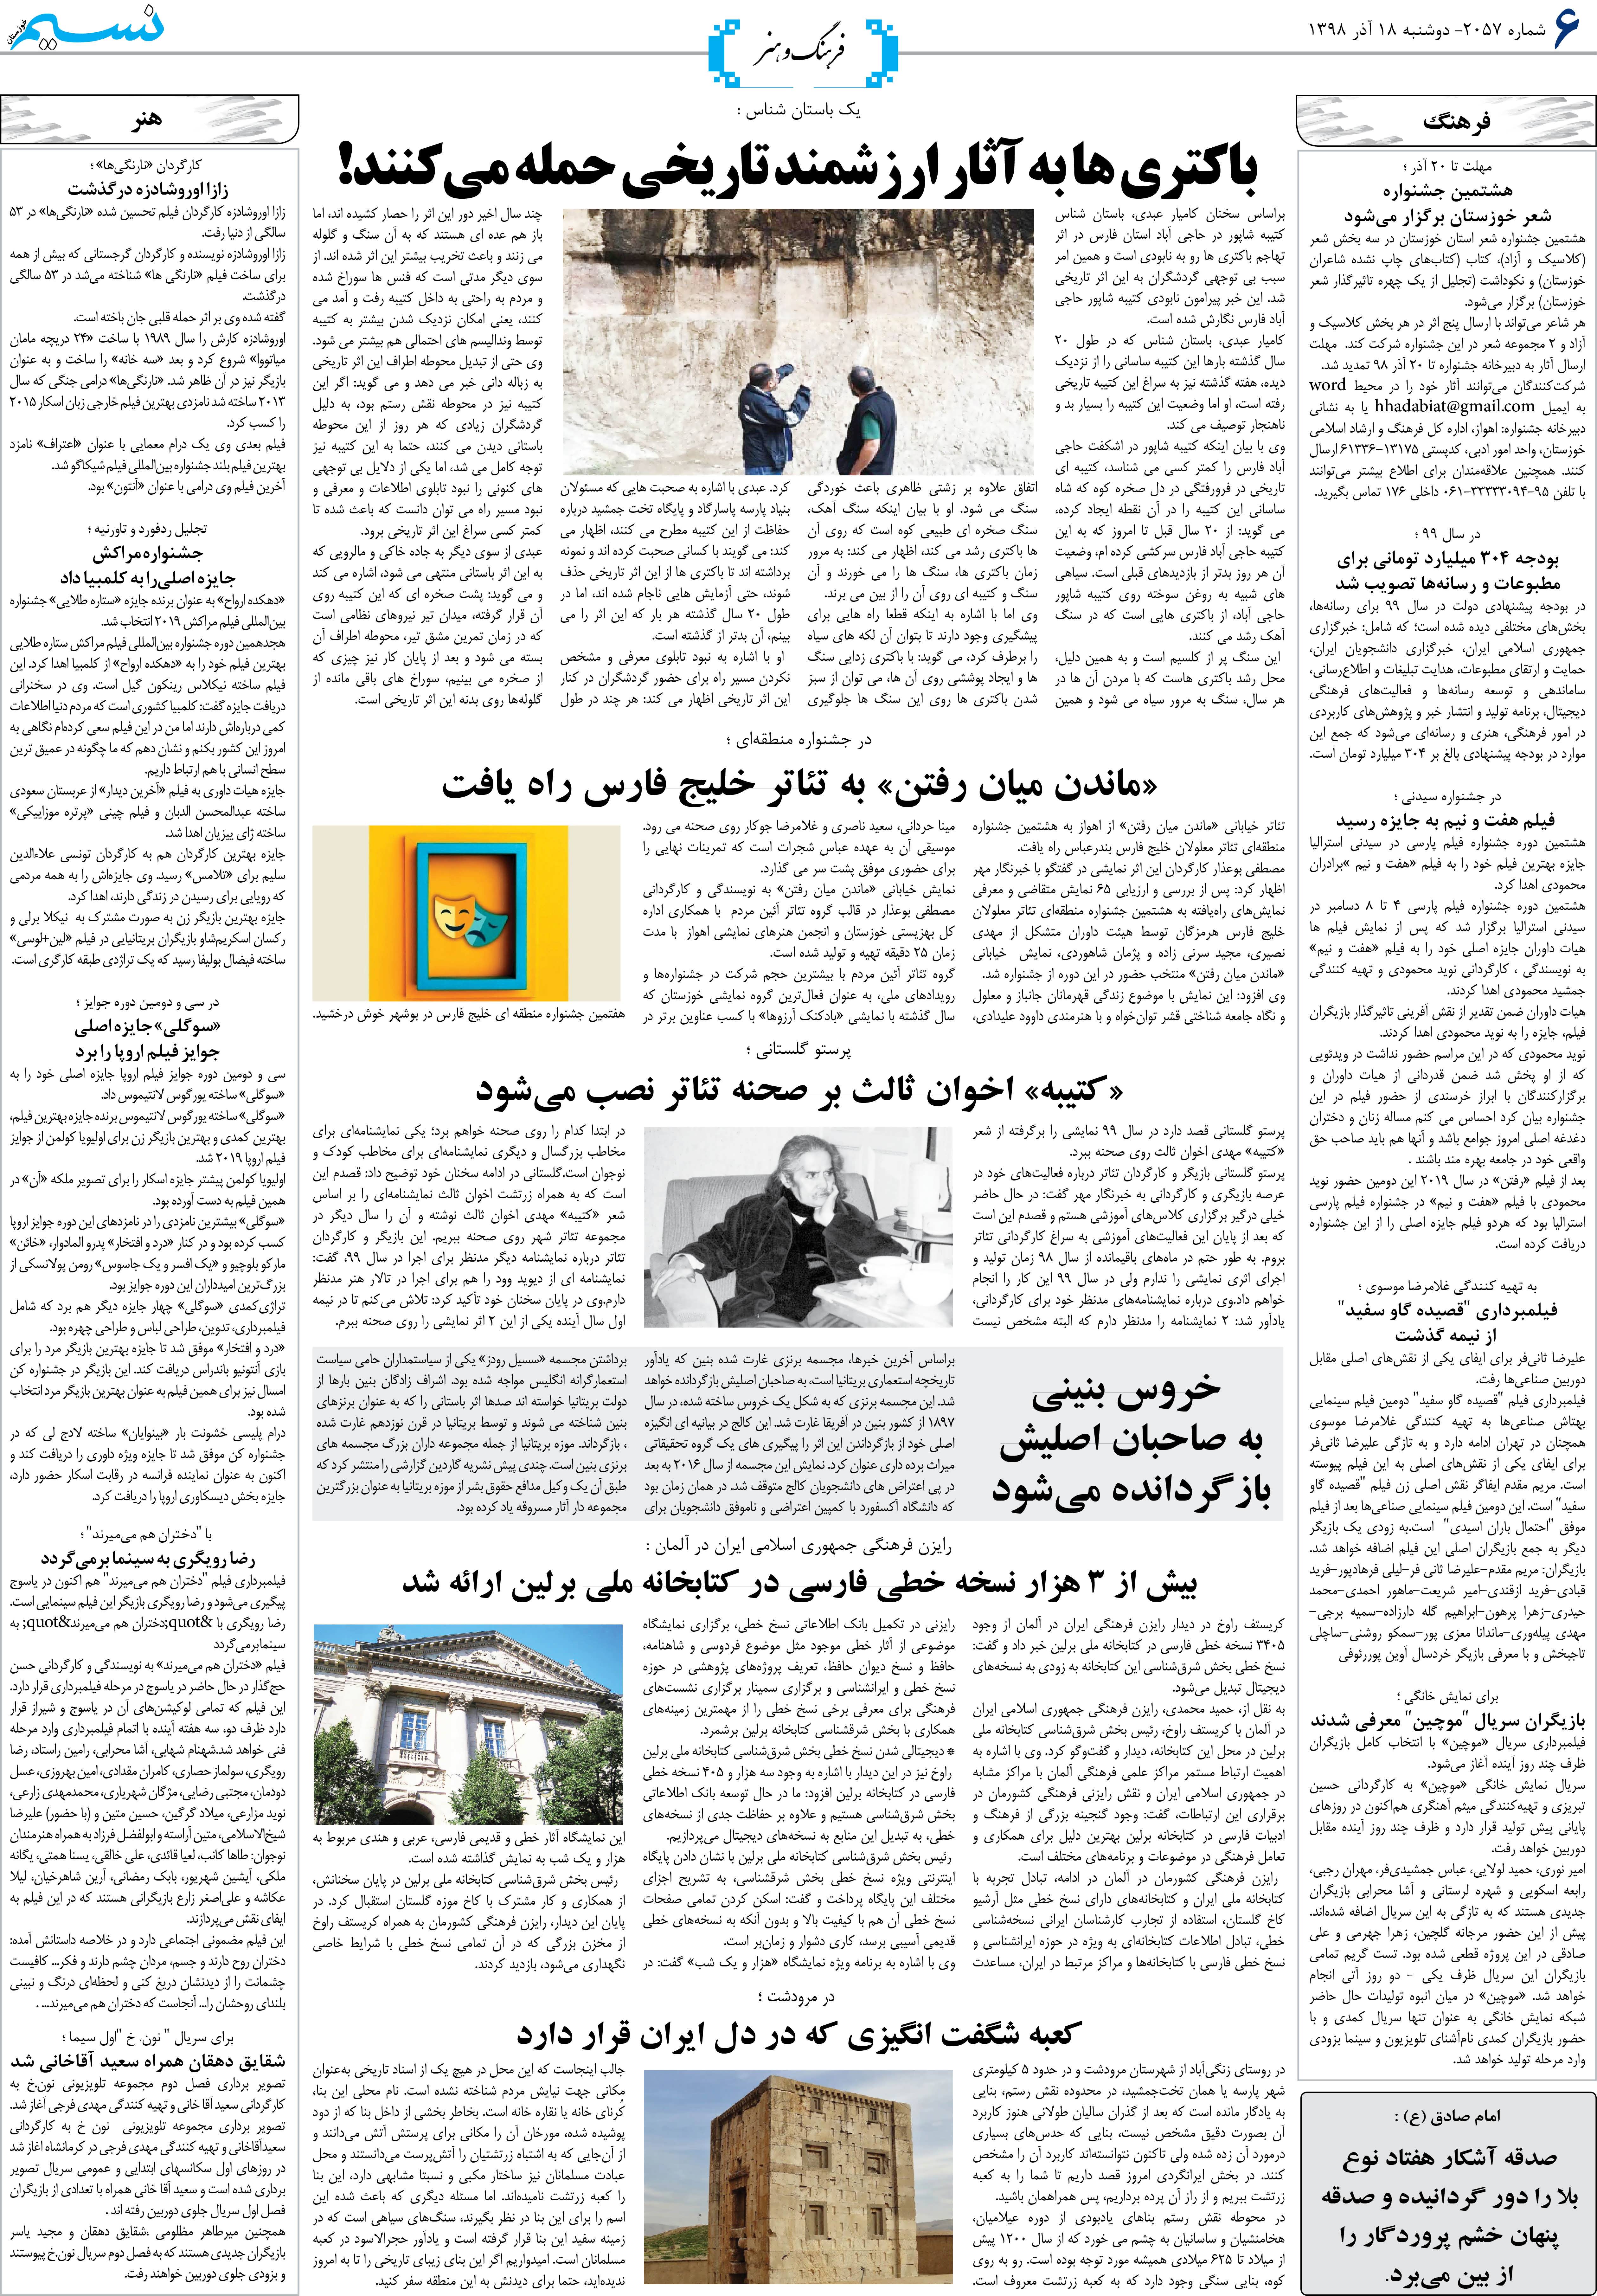 صفحه فرهنگ و هنر روزنامه نسیم شماره 2057